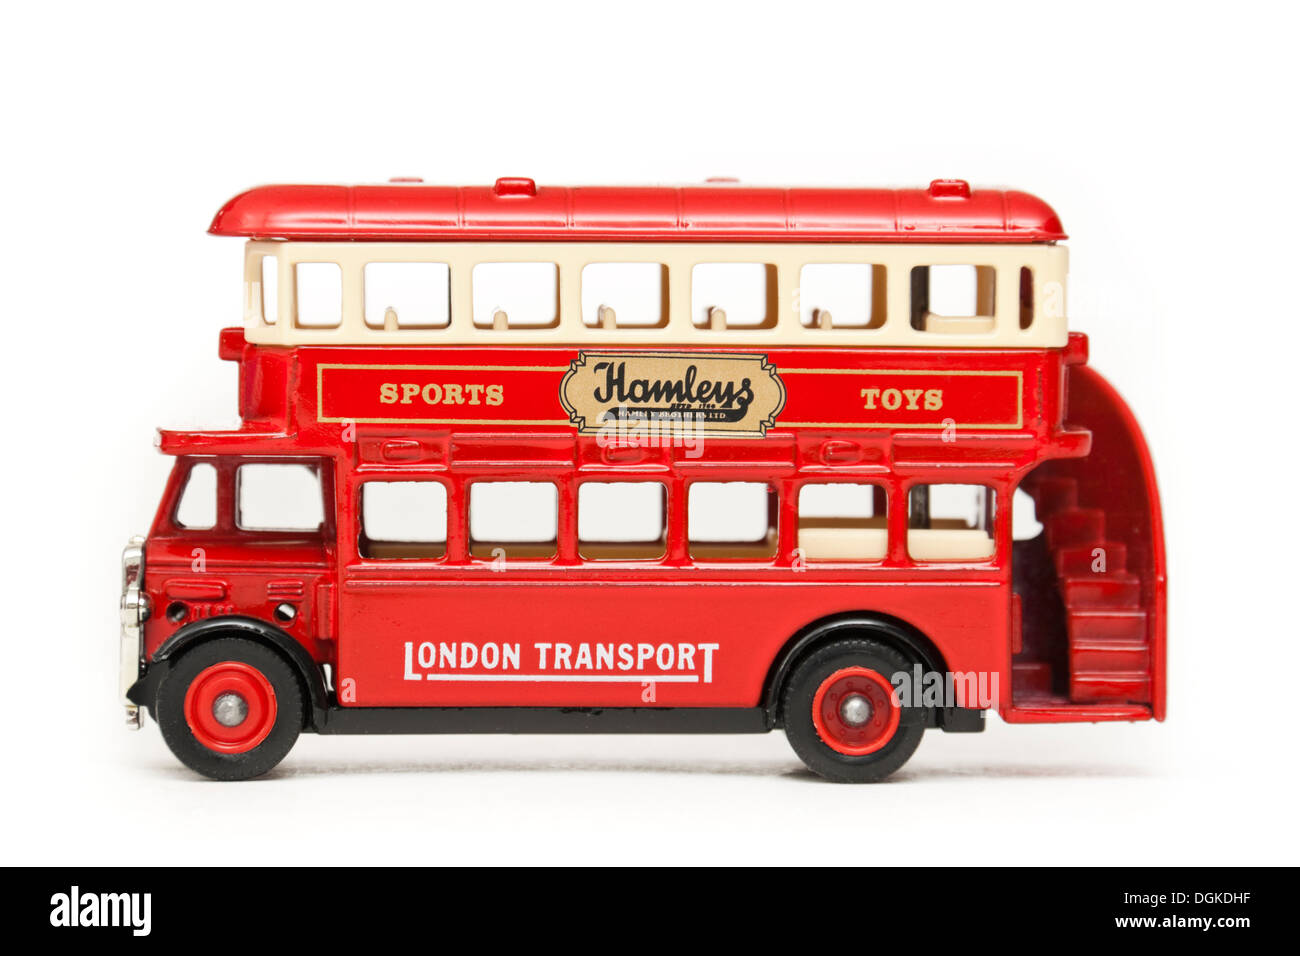 Matchbox diecast réplique de London Transport autobus à deux étages avec de la publicité sur le côté d'Hamleys Toy Shop Banque D'Images